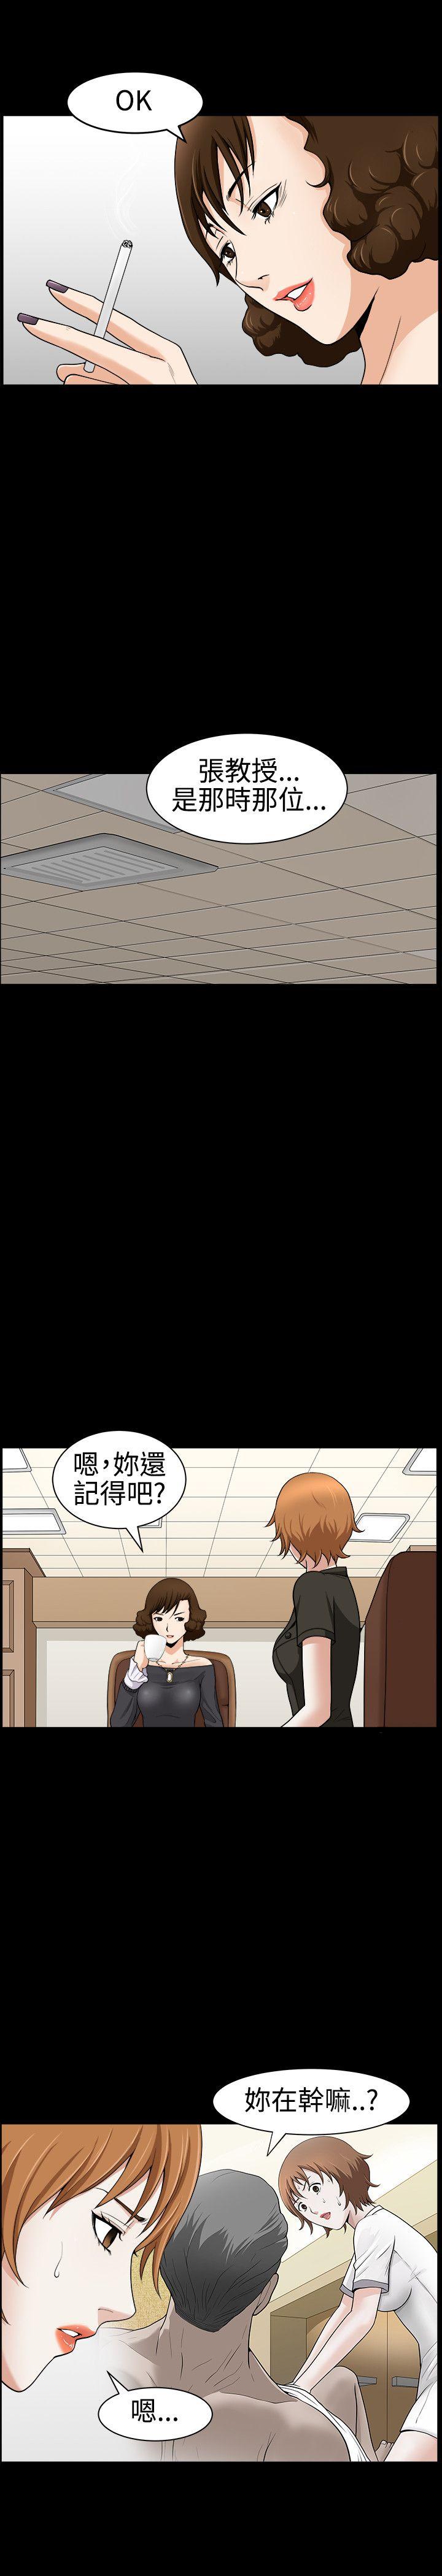 韩国污漫画 人妻性解放3:粗糙的手 第29话 26